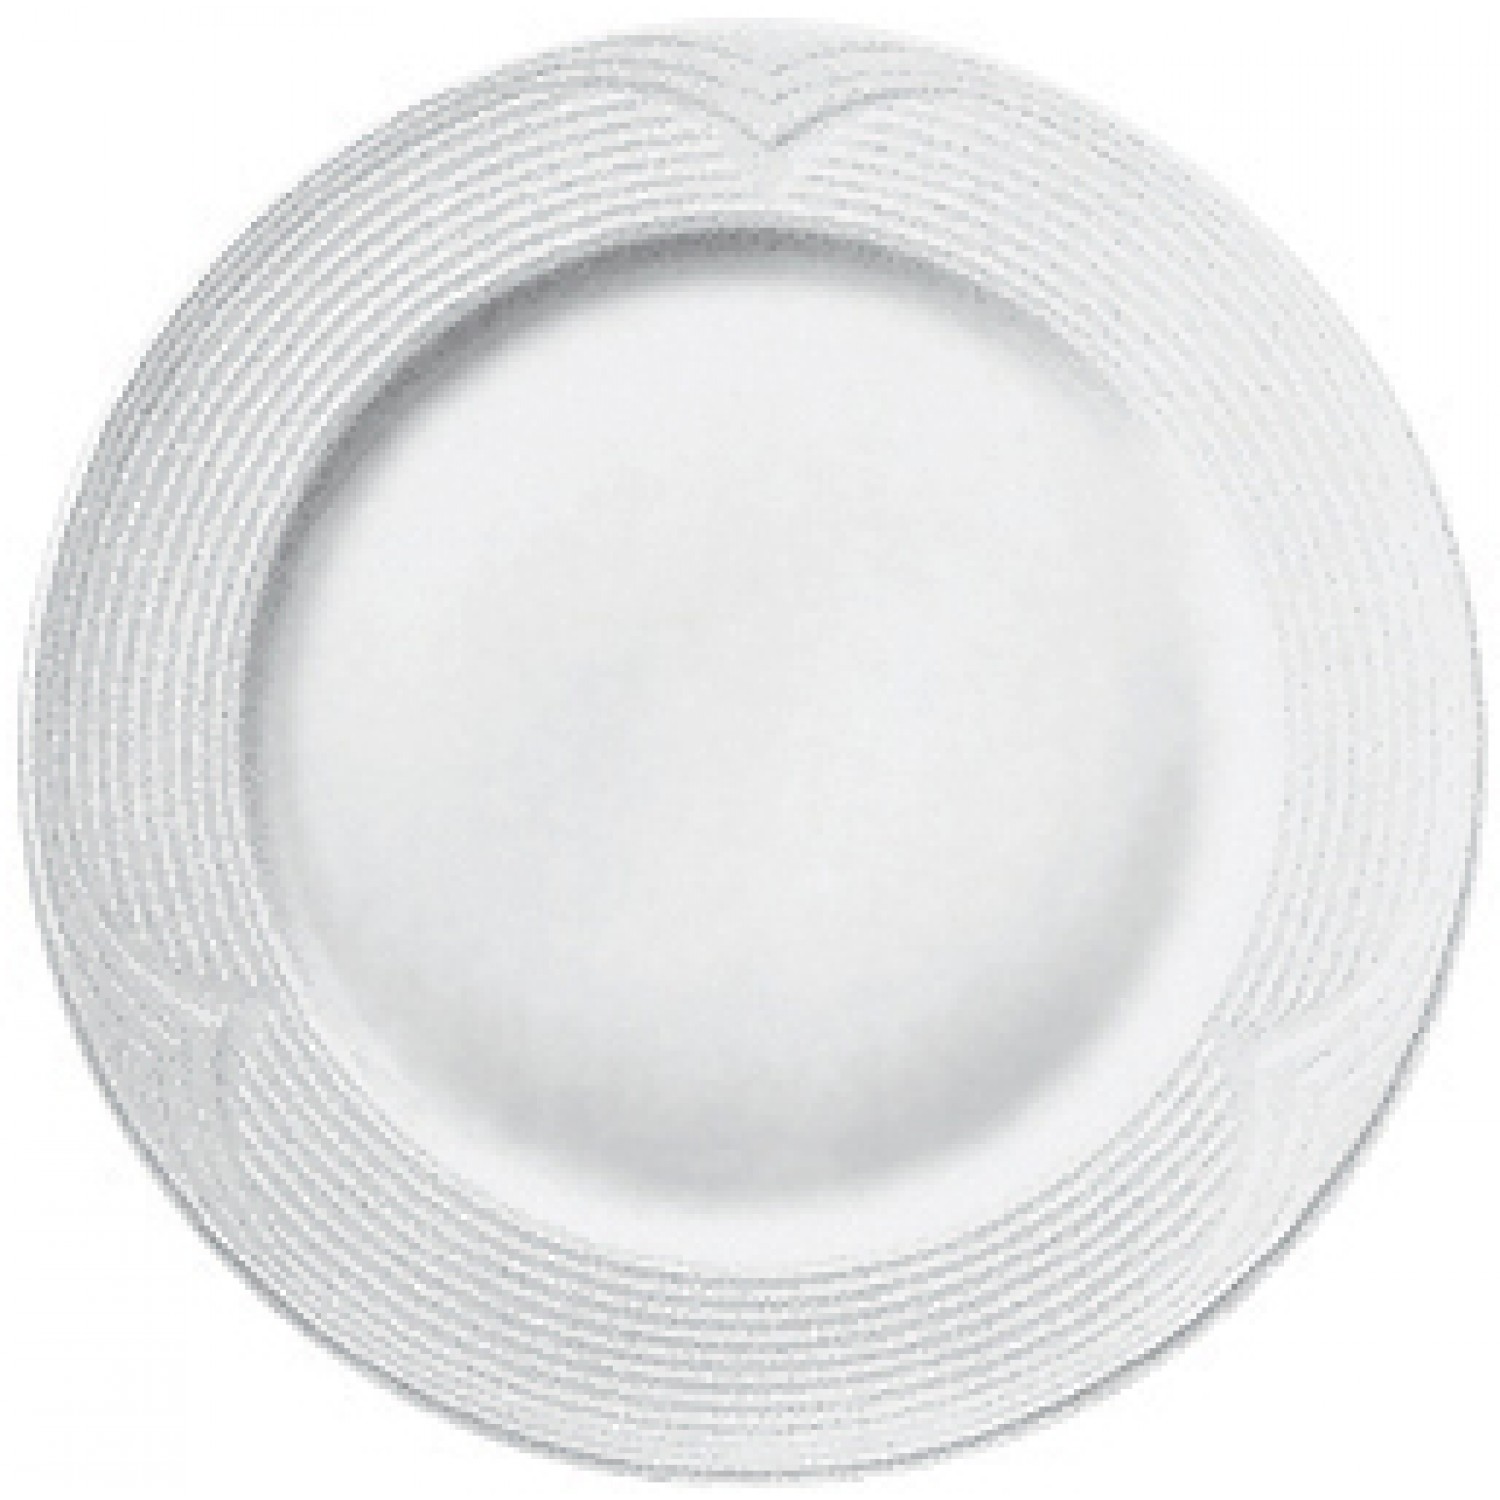 Πιάτο Ρηχό 24cm Άσπρο Πορσελάνης Saturn Gural 52.52506